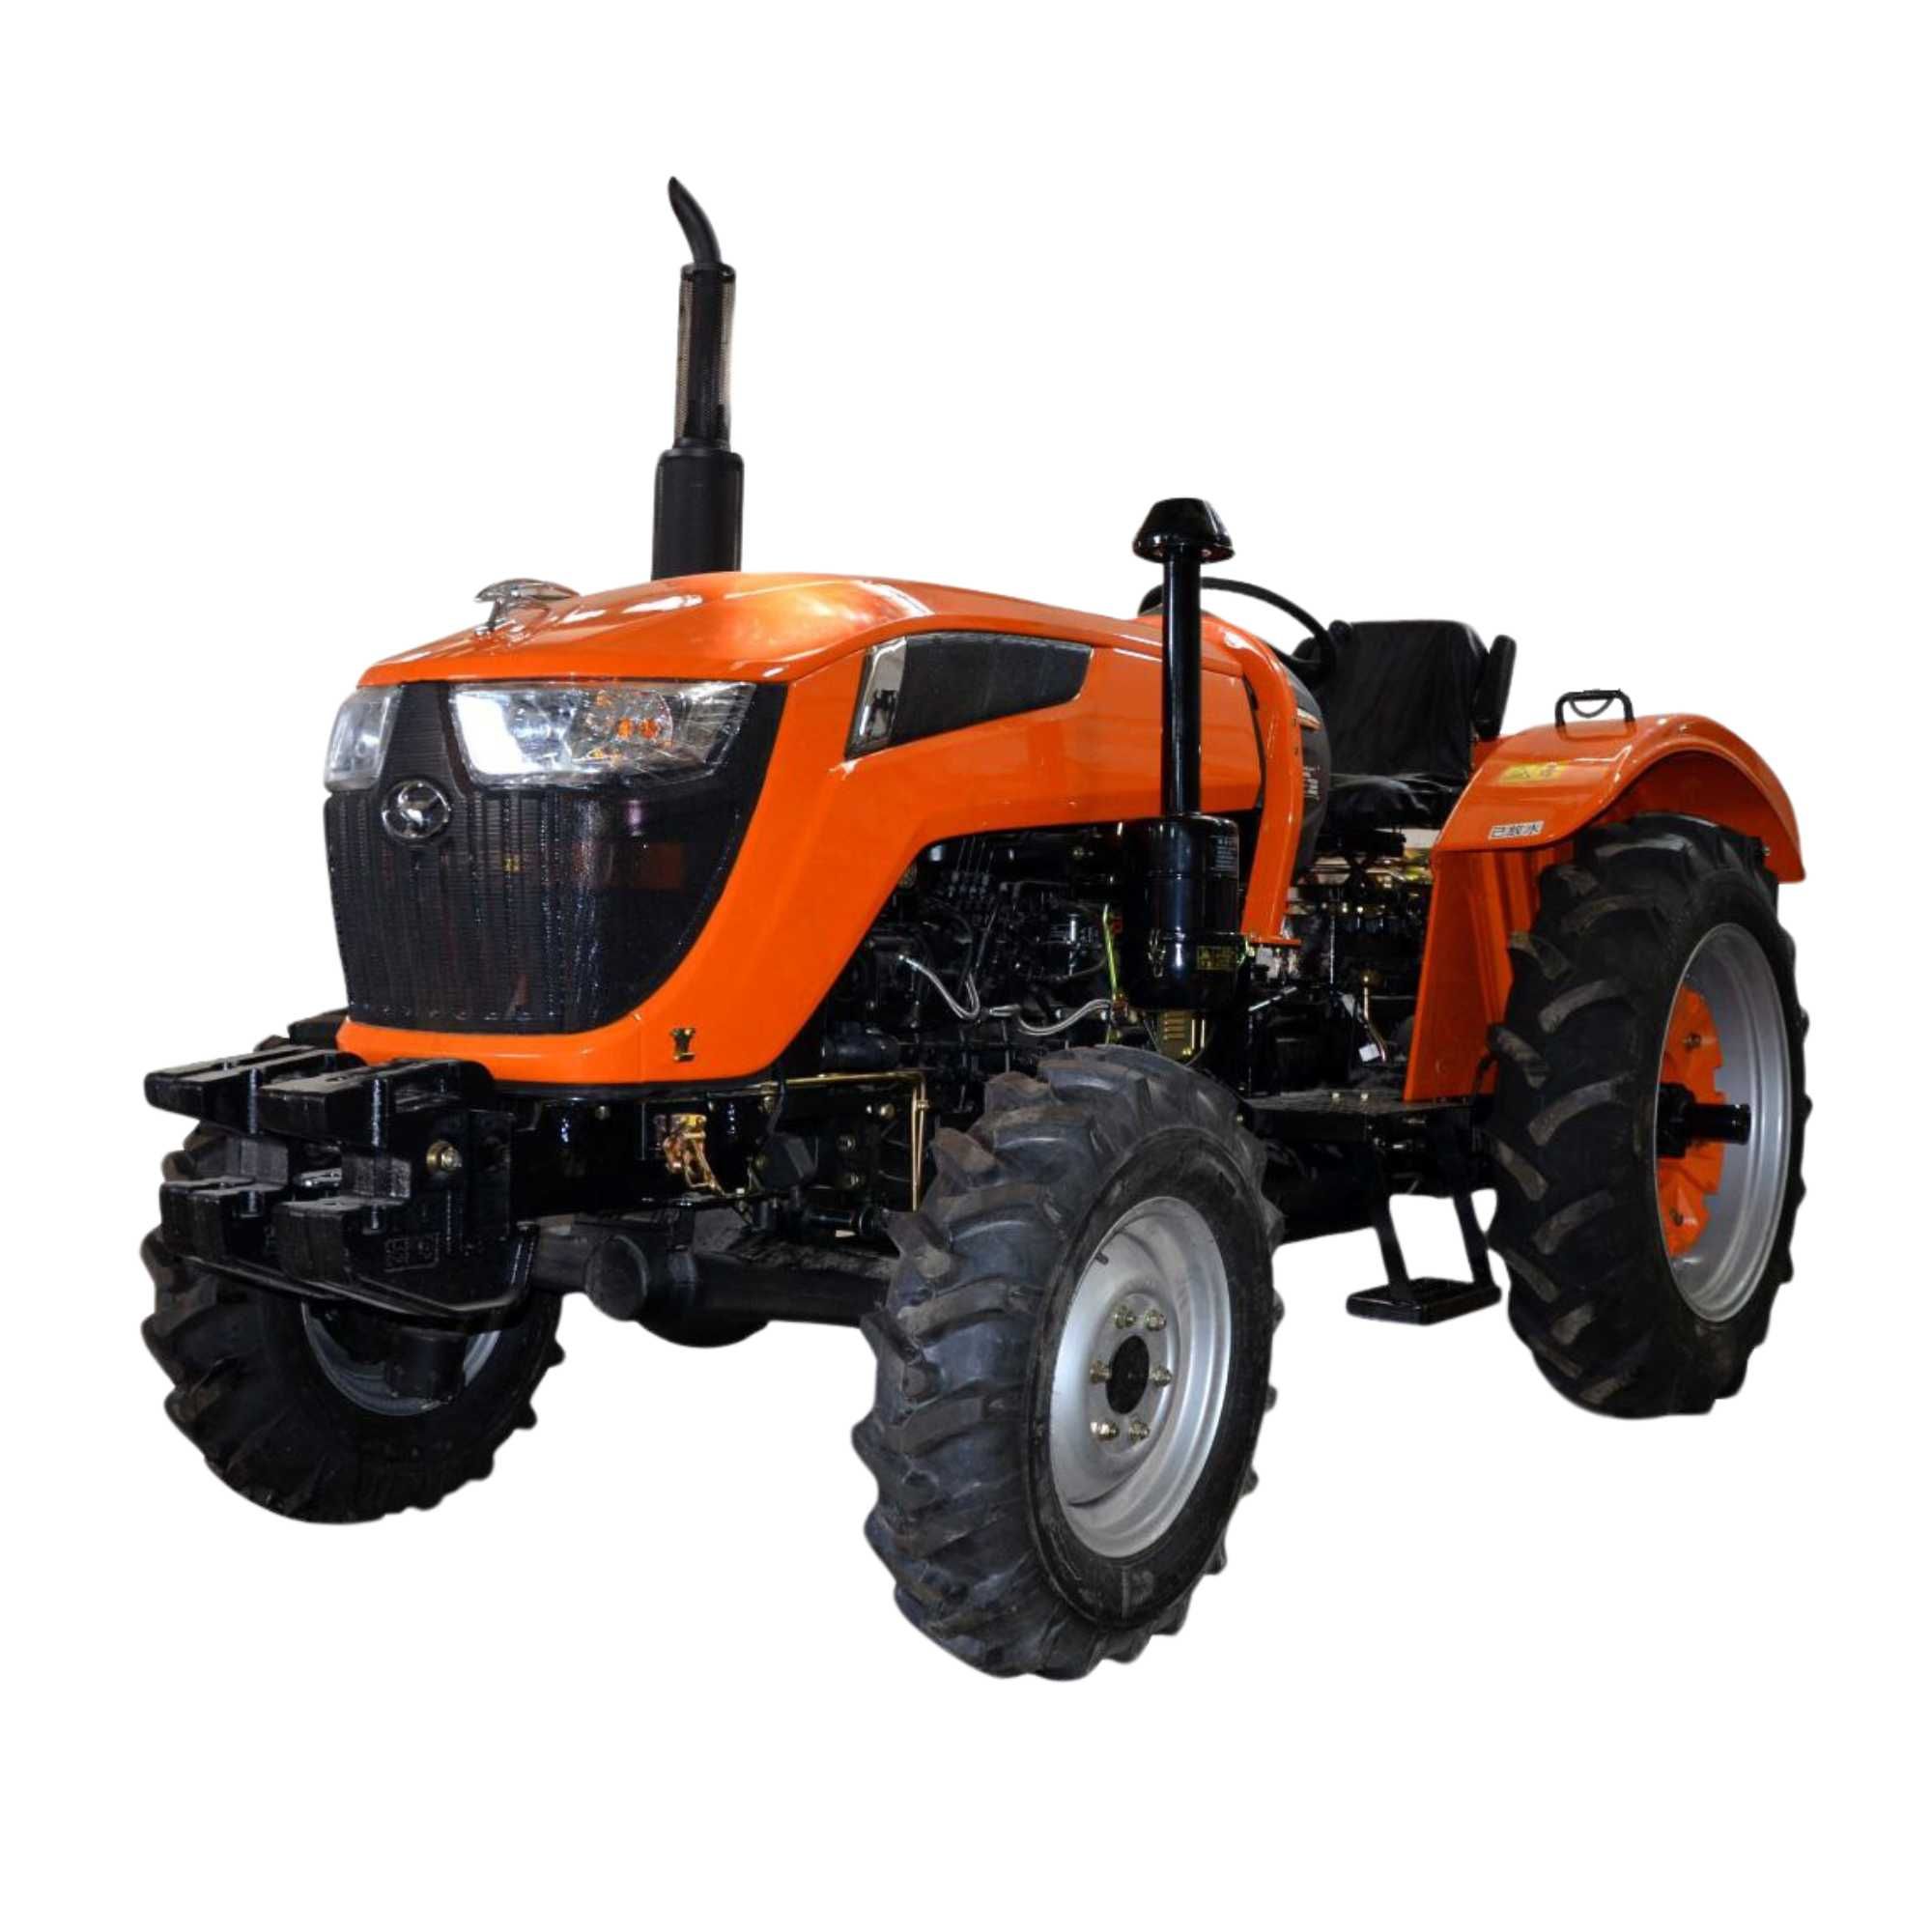 Chimgan 404 mini traktor (40 ot kuchi) | Мини-трактор Chimgan 404